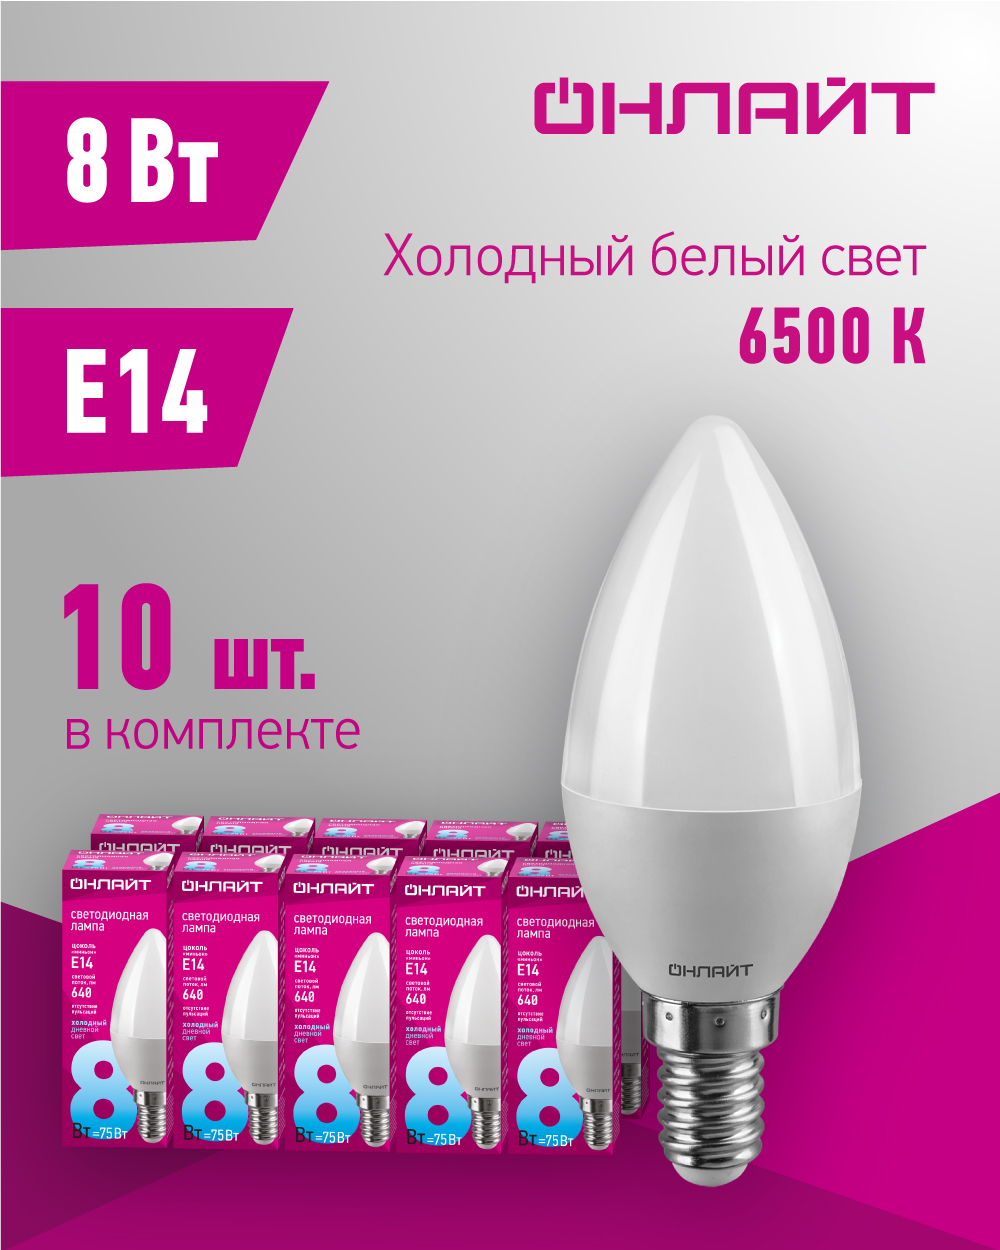 Лампа светодиодная ОНЛАЙТ 61 128, свеча, 8 Вт, Е14, холодного света 6500К, упаковка 10 шт.